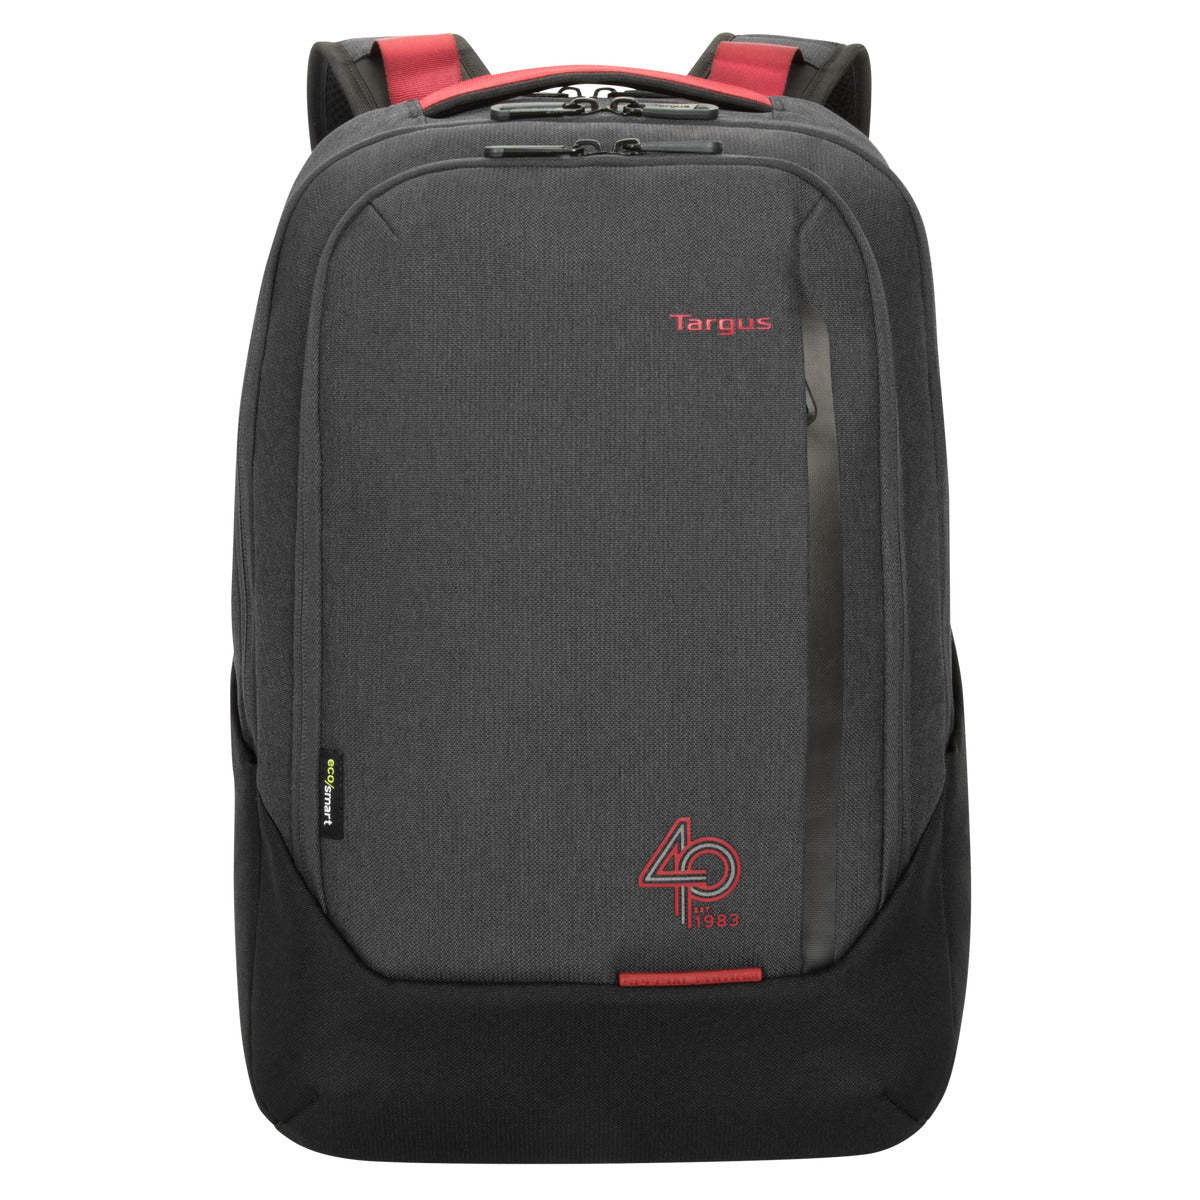 New: 8432 black ECO Top loader Laptop bag 15.6”